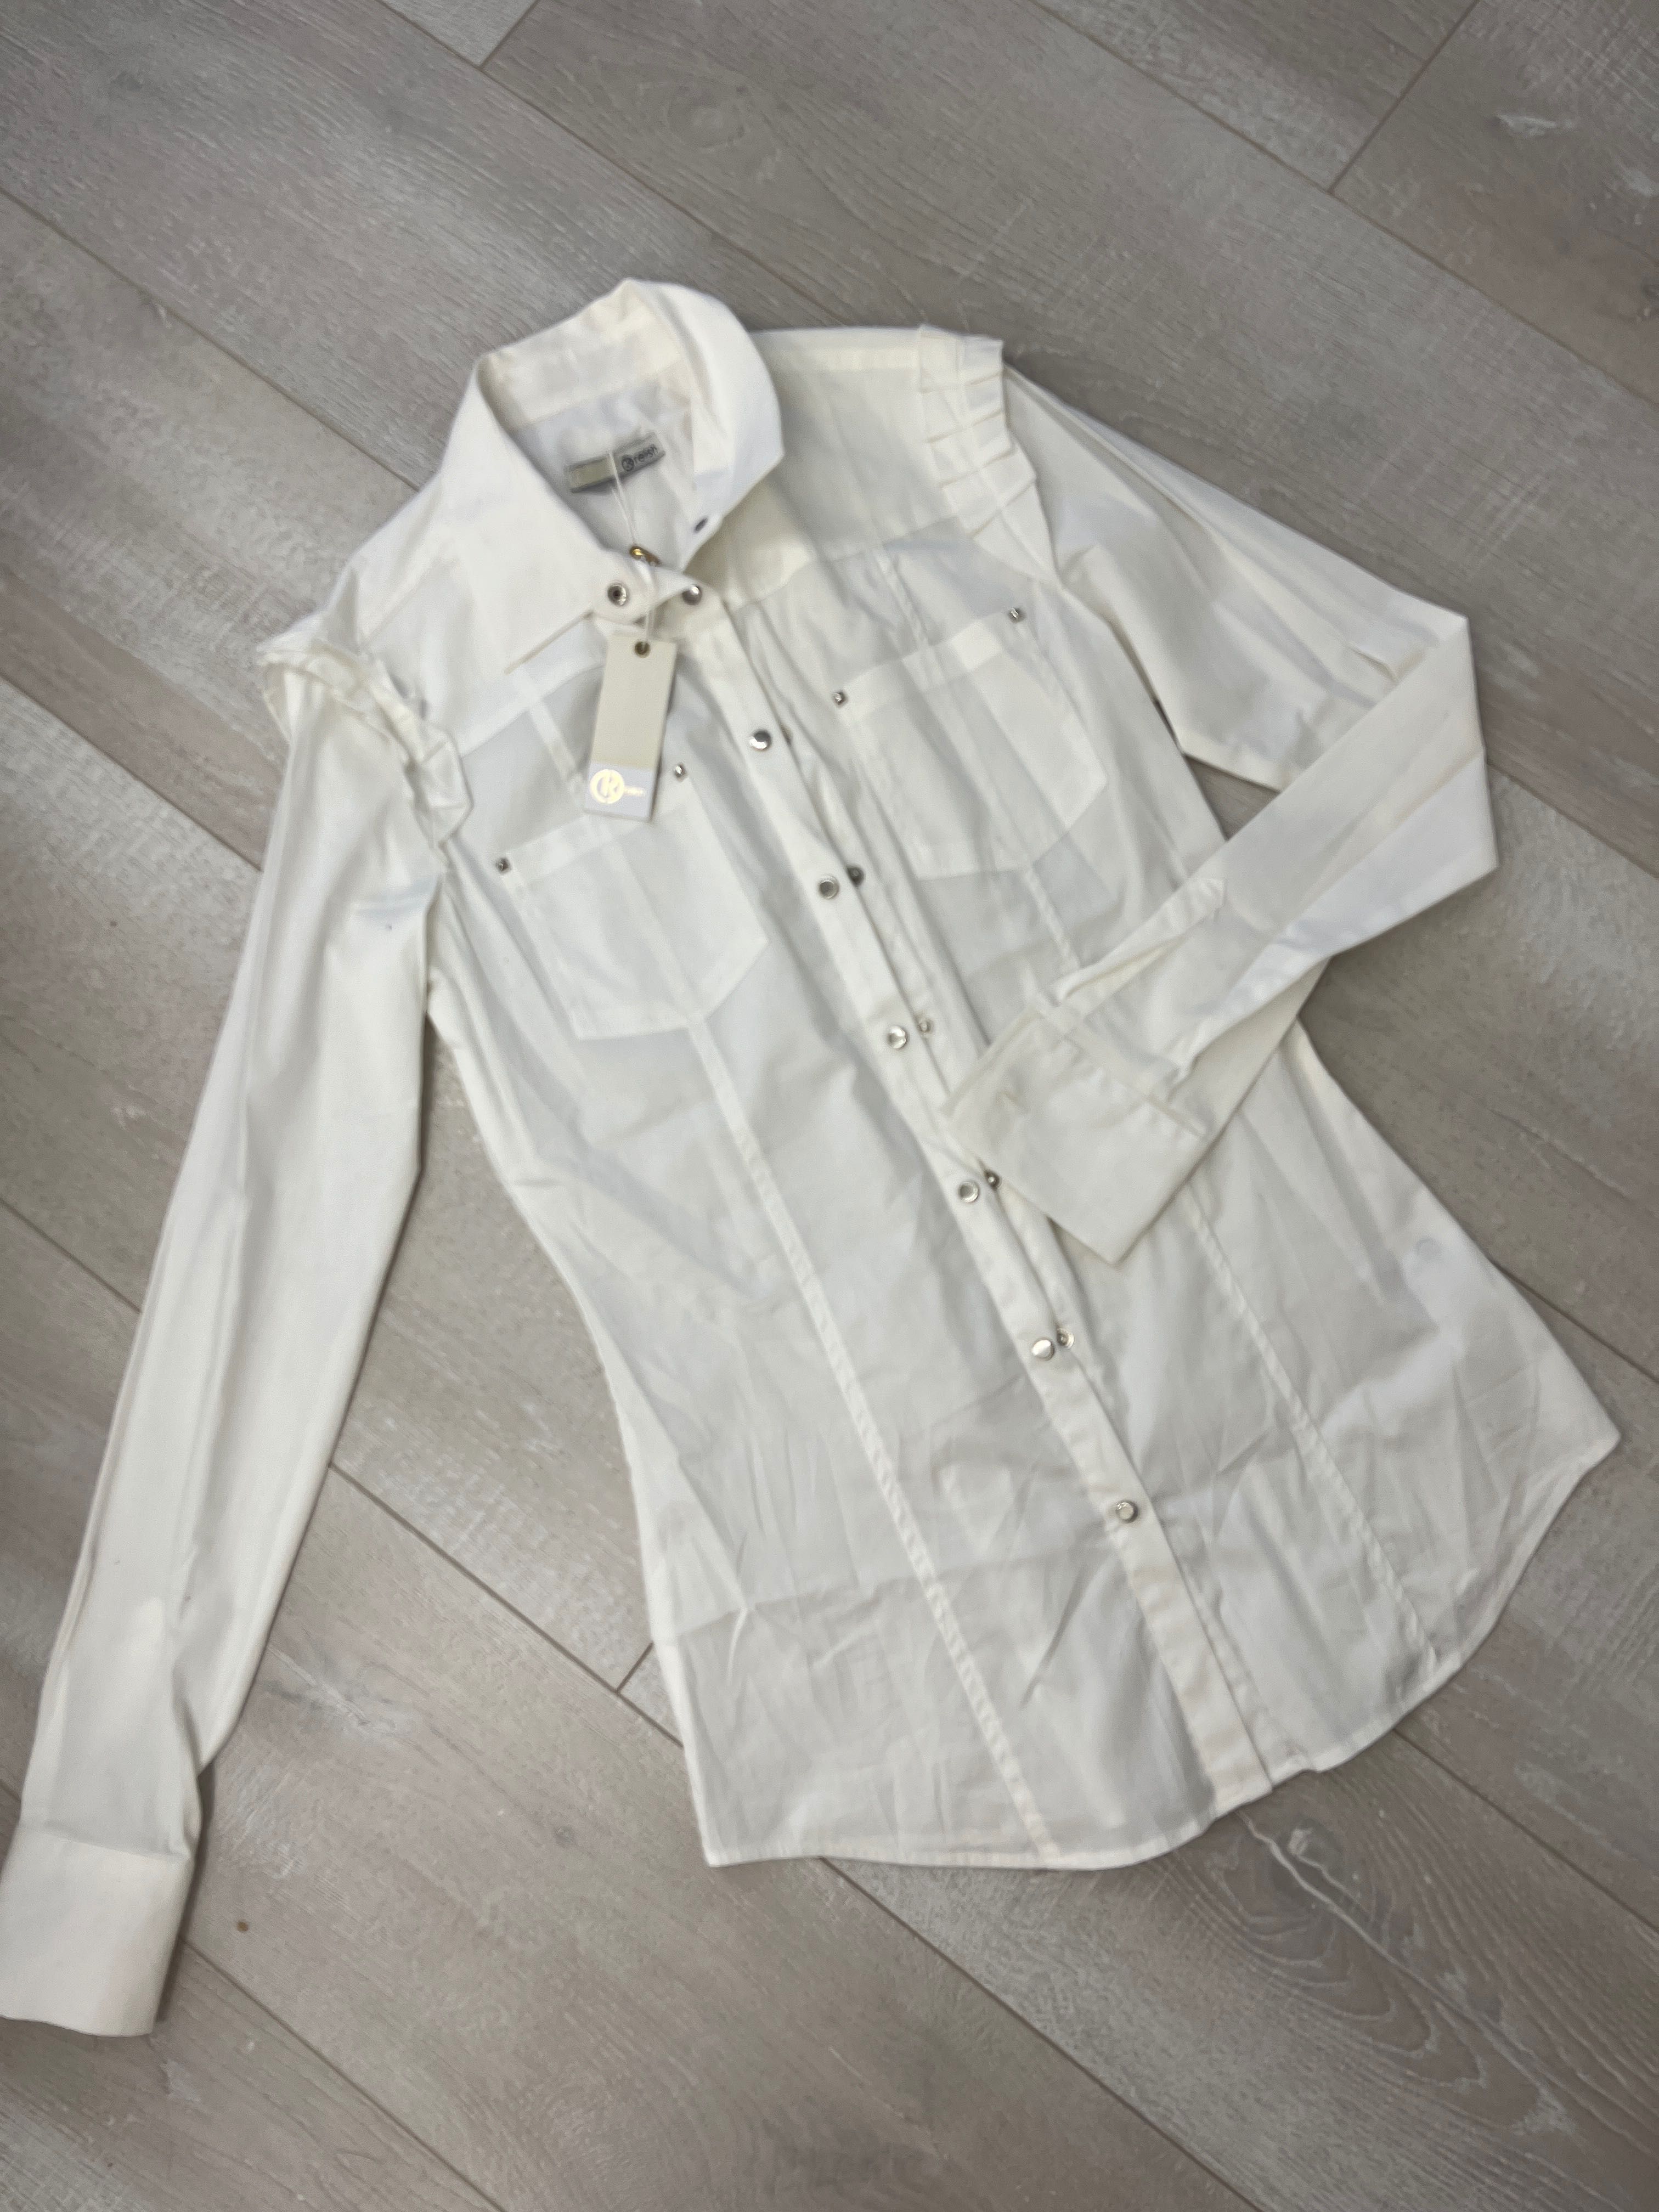 Біла жіноча рубашка бренду Relish. 40р. Нова, з біркою!